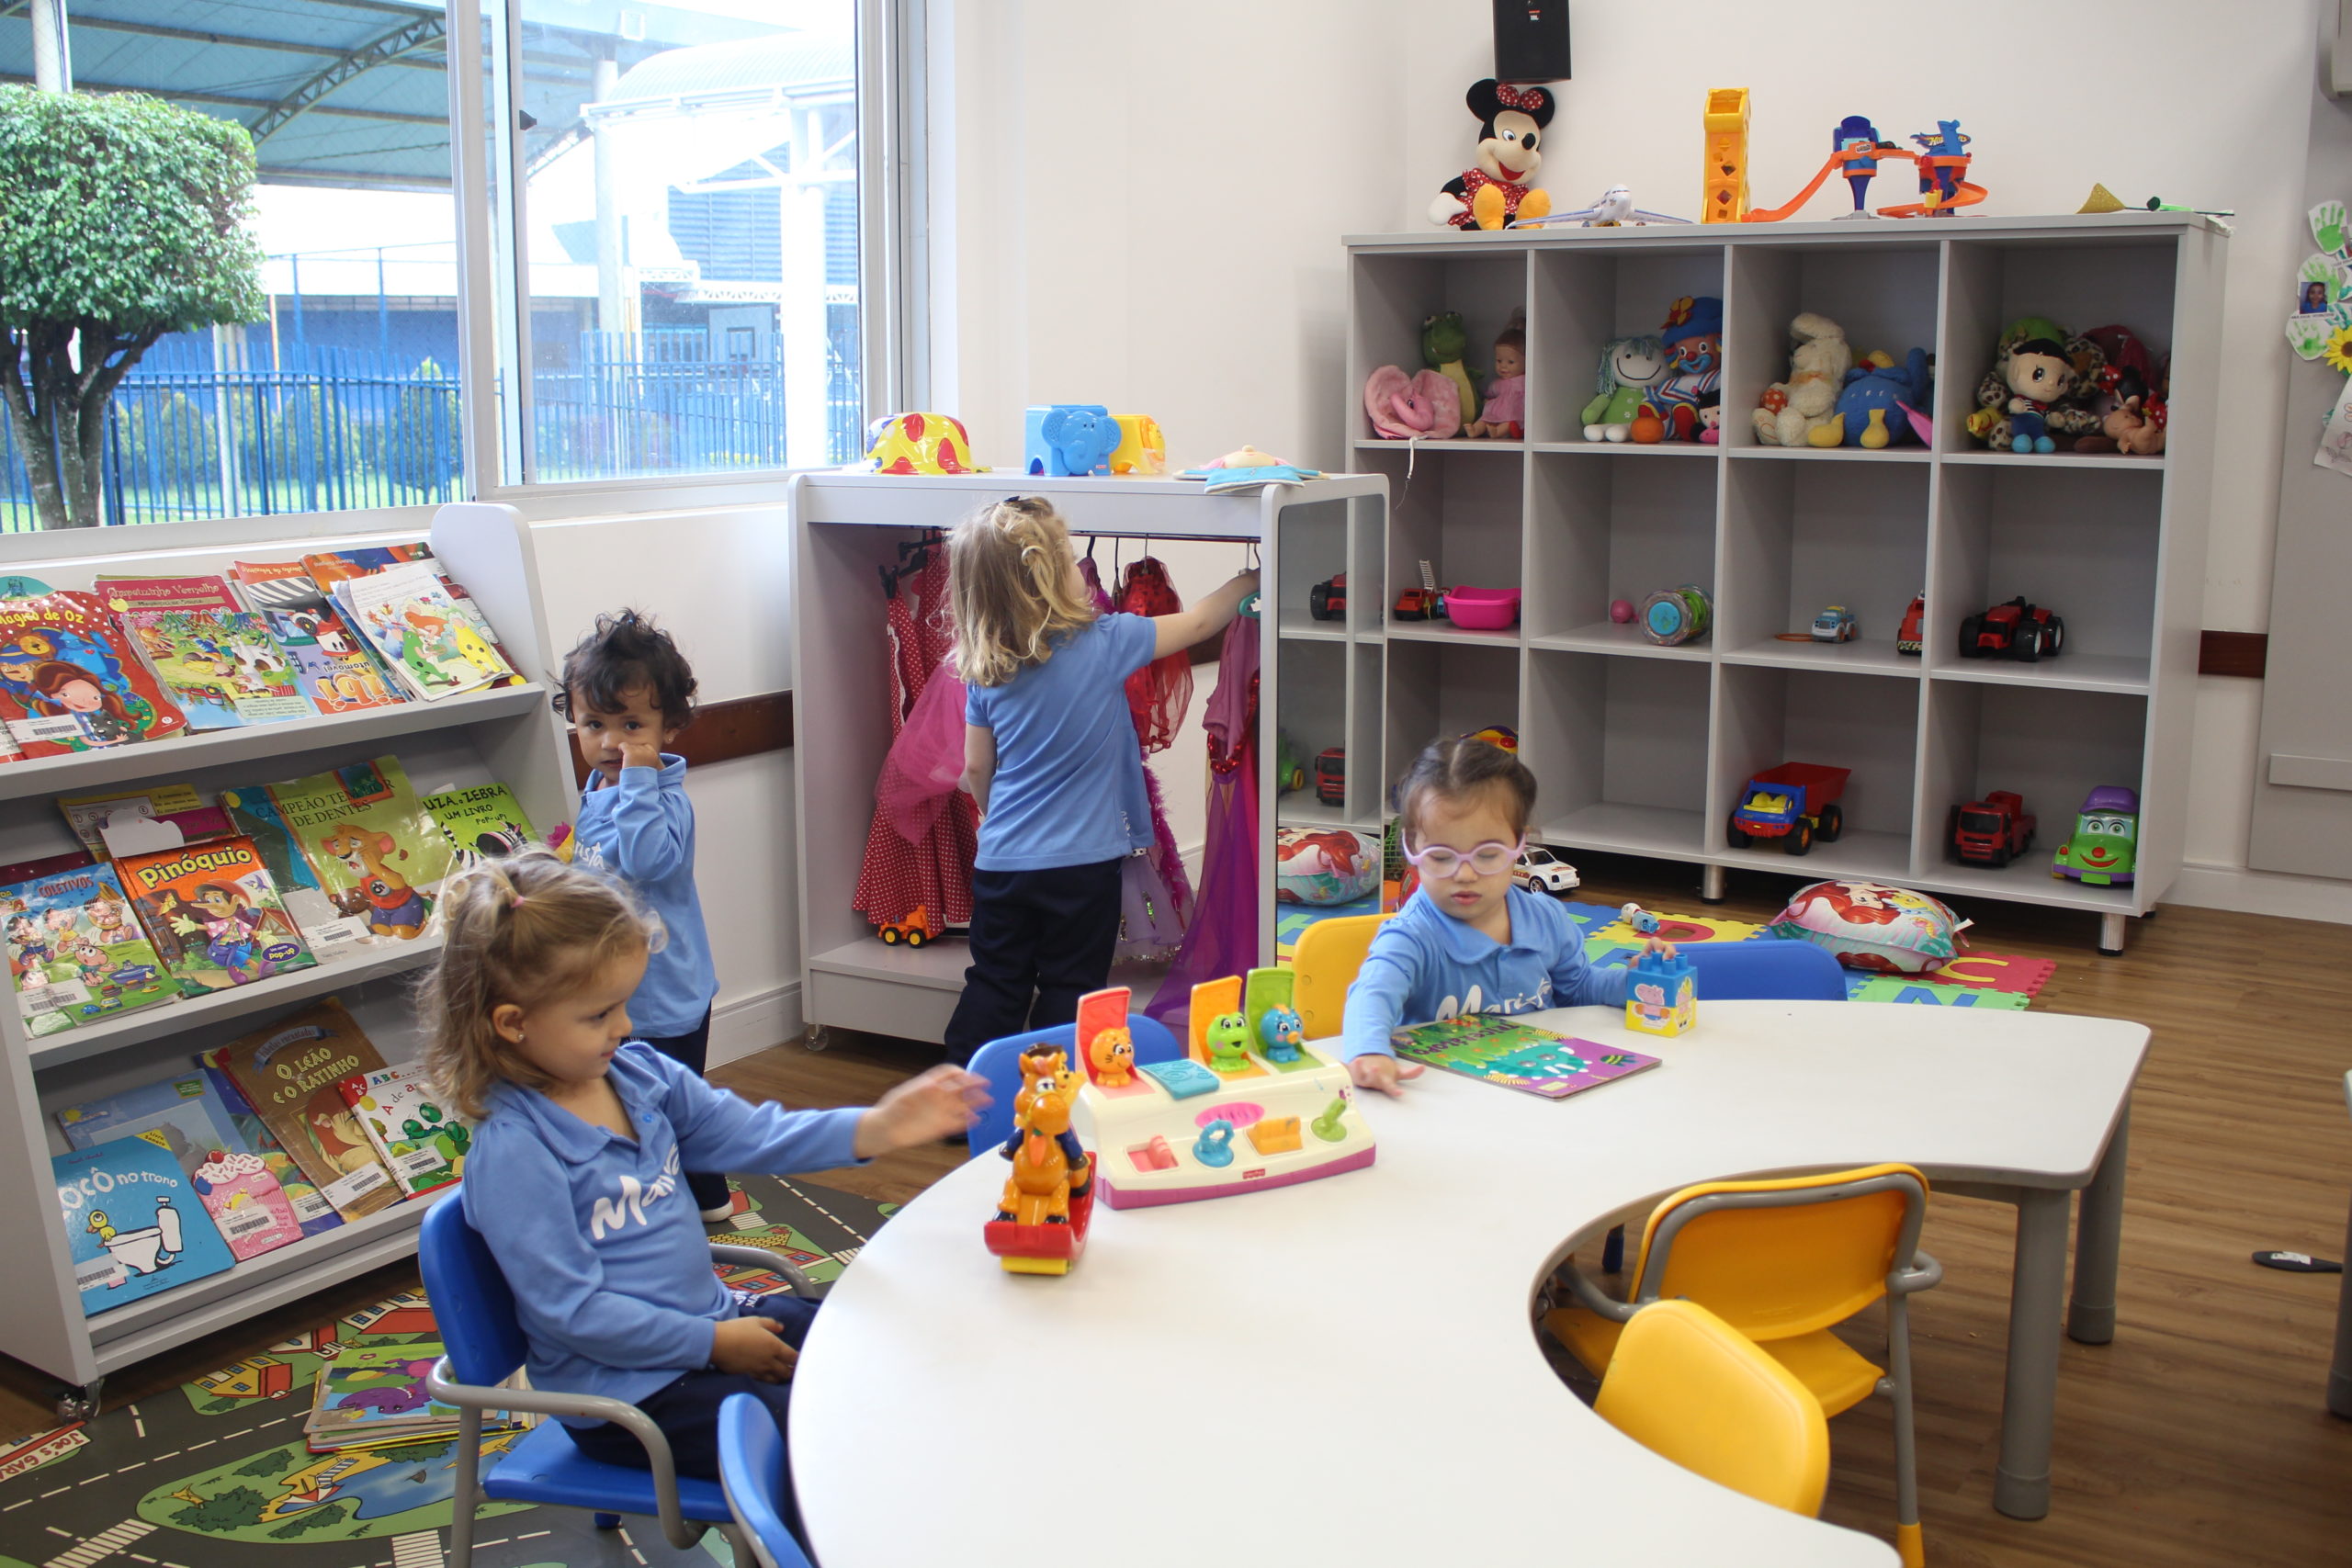 Ponta Grossa inaugura espaço exclusivo para as crianças